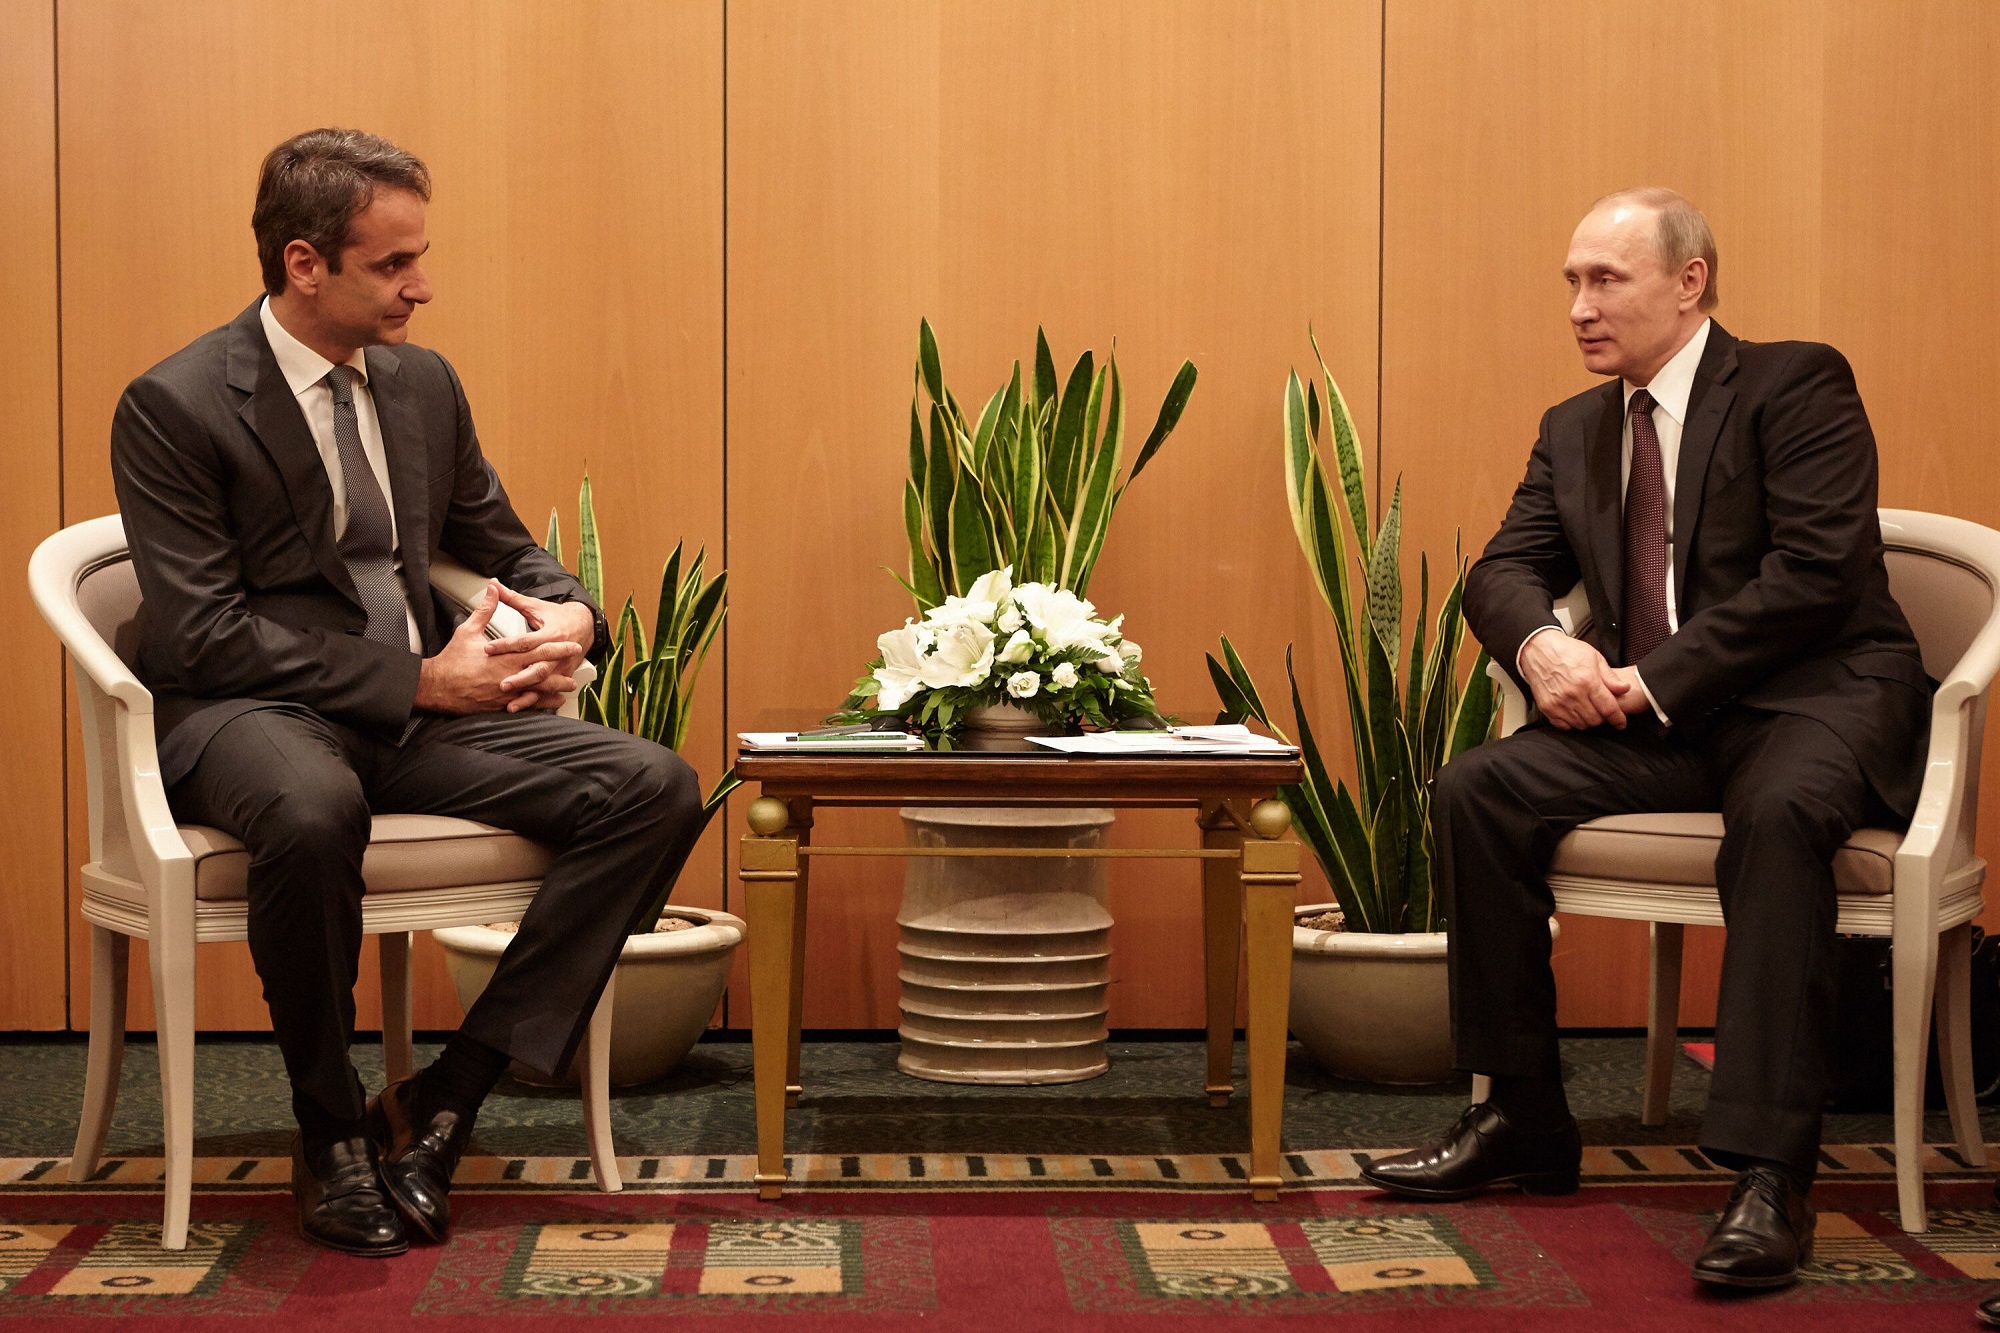 Επανεκκίνηση ή συντήρηση; – Οι ελληνορωσικές σχέσεις υπό το φως της πρόσφατης συνάντησης του έλληνα πρωθυπουργού με τον ρώσο Πρόεδρο